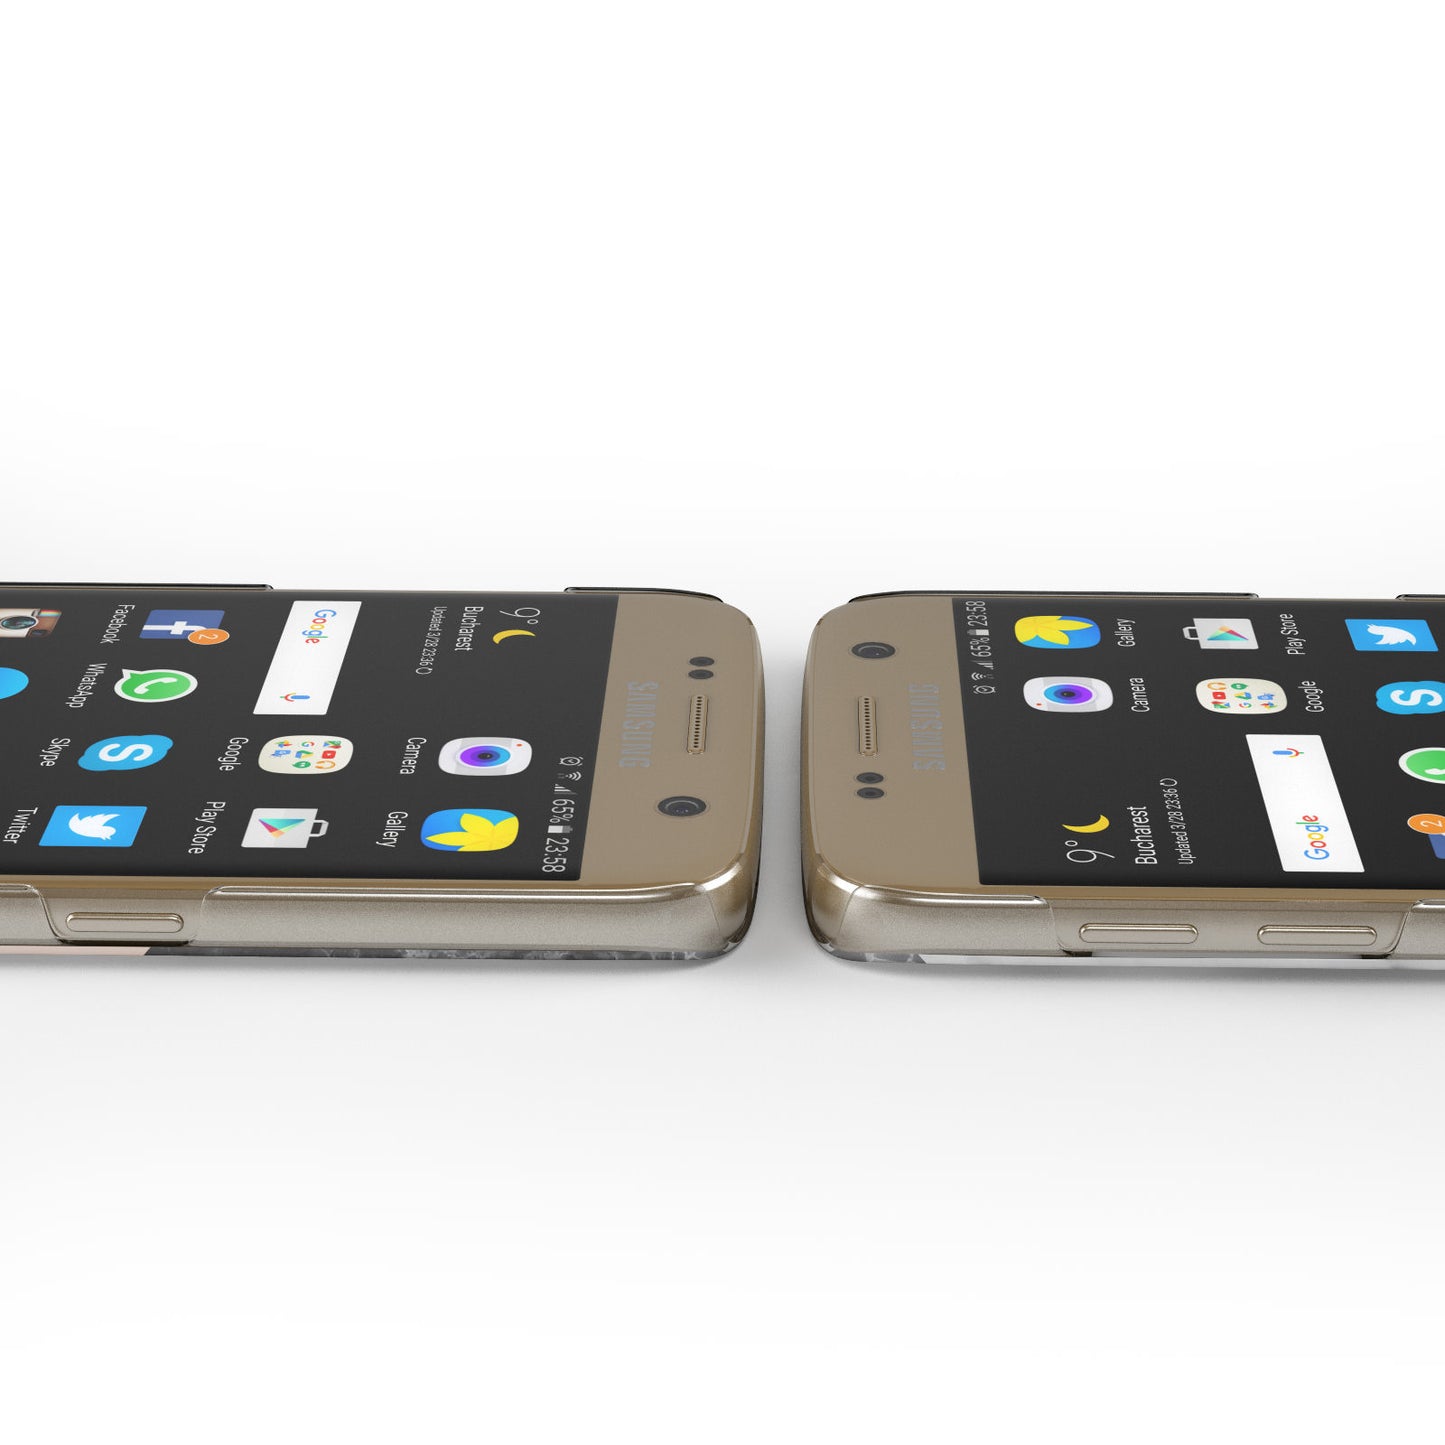 Marble Black White Grey Peach Samsung Galaxy Case Ports Cutout